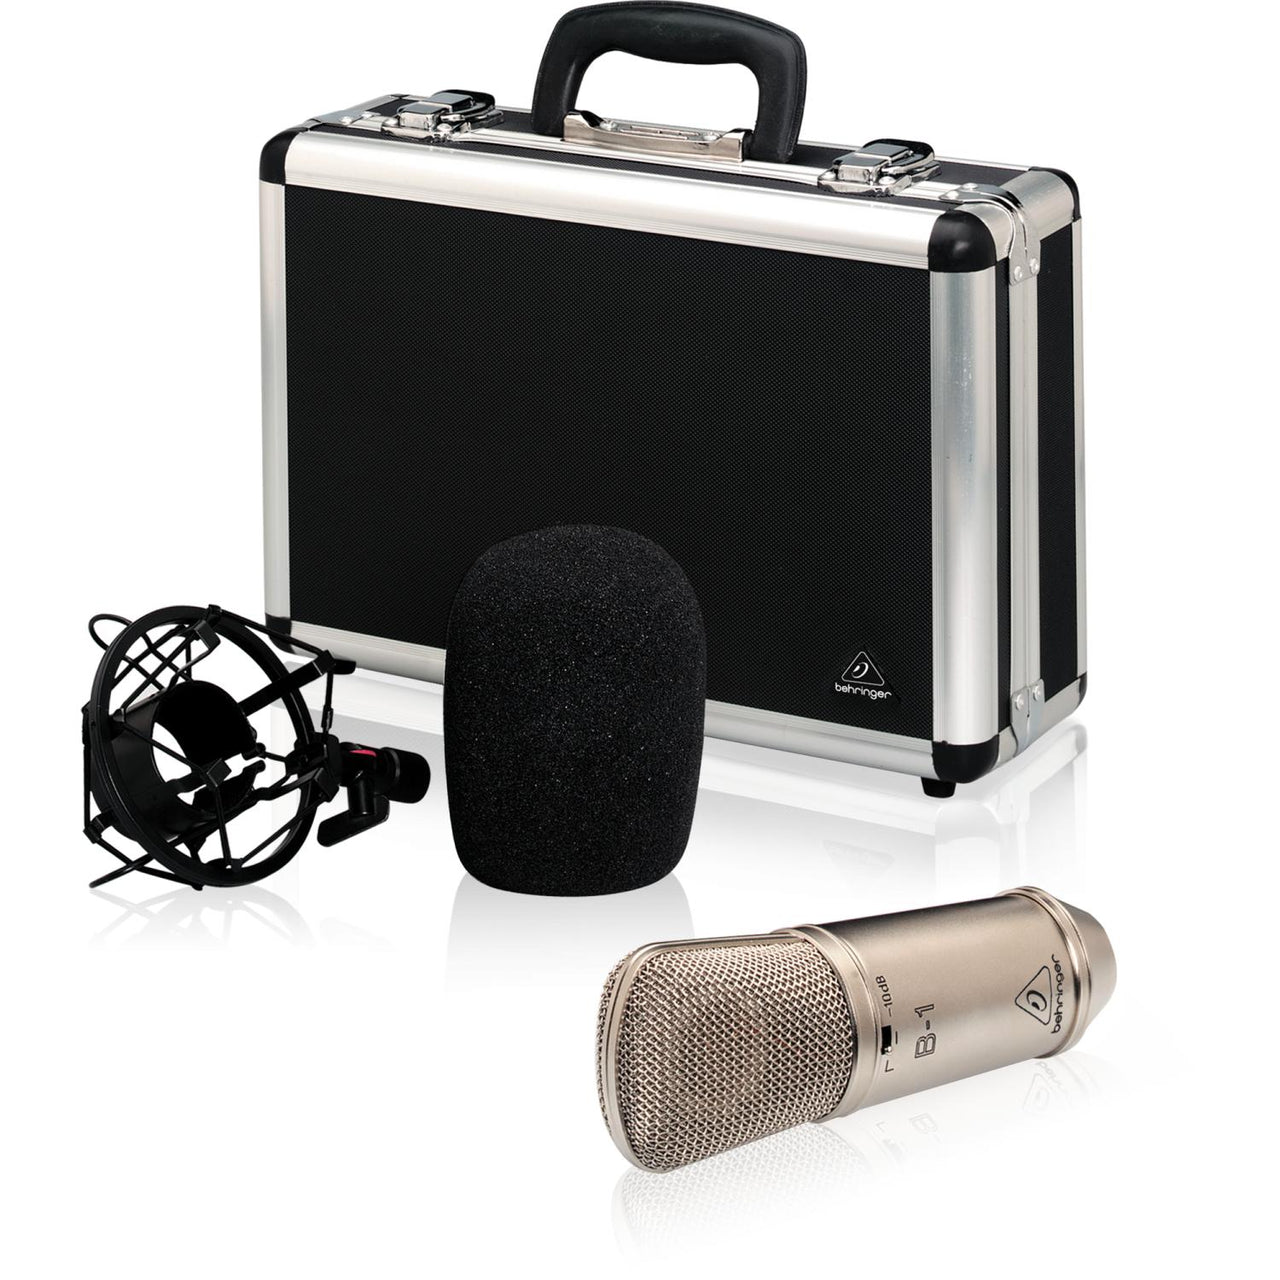 Microfono Behringer Condensador Estudio, B-1